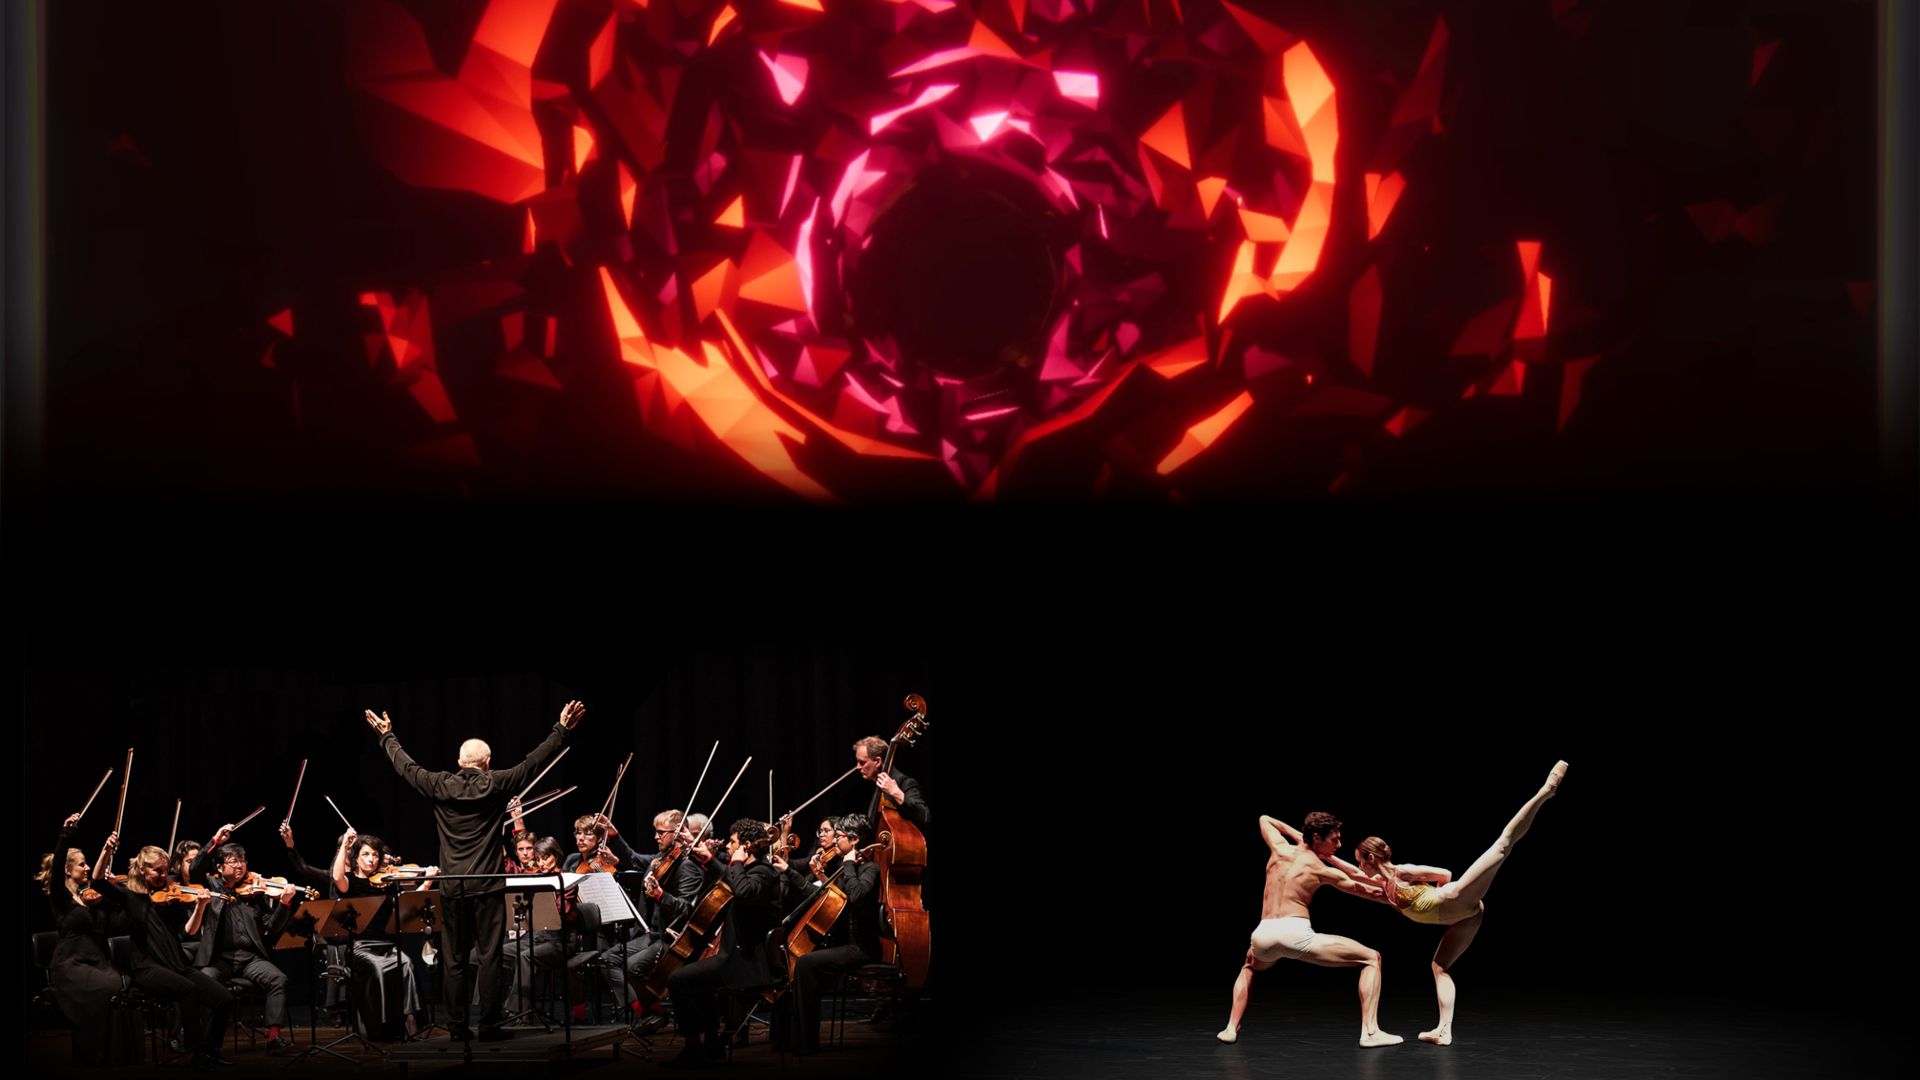 Hologramm-Ballett: Das Stuttgarter Kammerorchester spielt live im Festspielhaus, die Ballett-Tänzer aus Prag werden digital nach Baden-Baden projiziert.